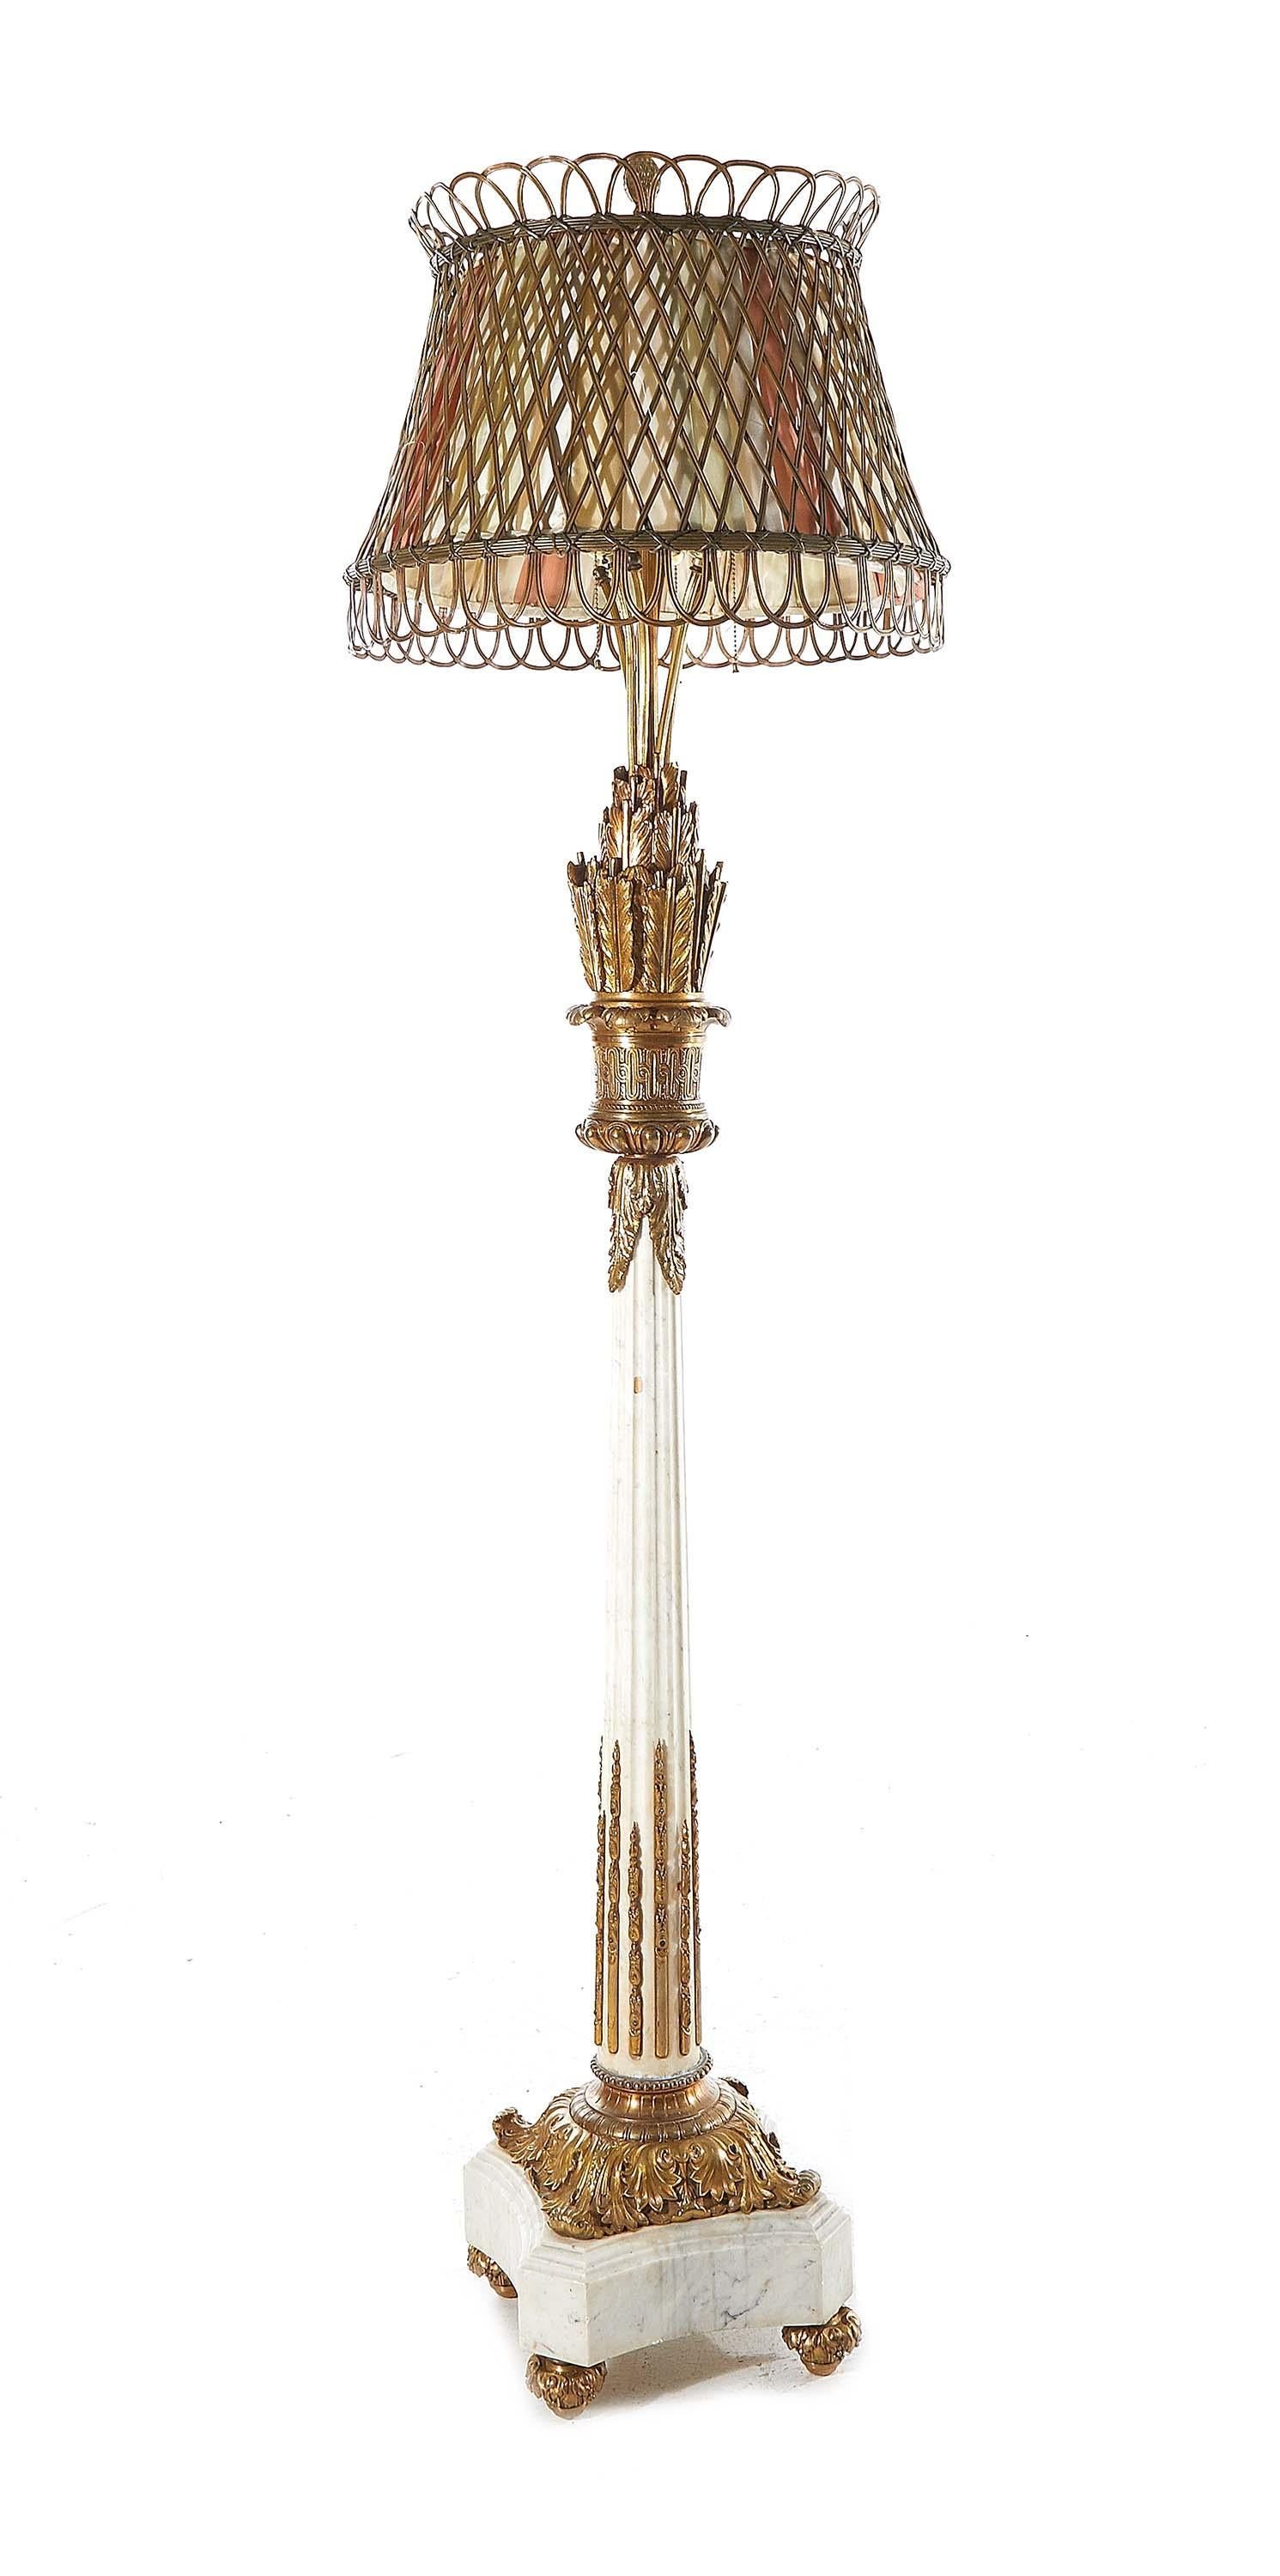 Impressionnant lampadaire de style Louis XVI en bronze doré et marbre. Abat-jour en bronze ajouré avec doublure en tissu ; supporté par une tige avec plume et flèche, colonne cannelée et socle quadrilobé, avec montures en bronze. 
Dimensions :